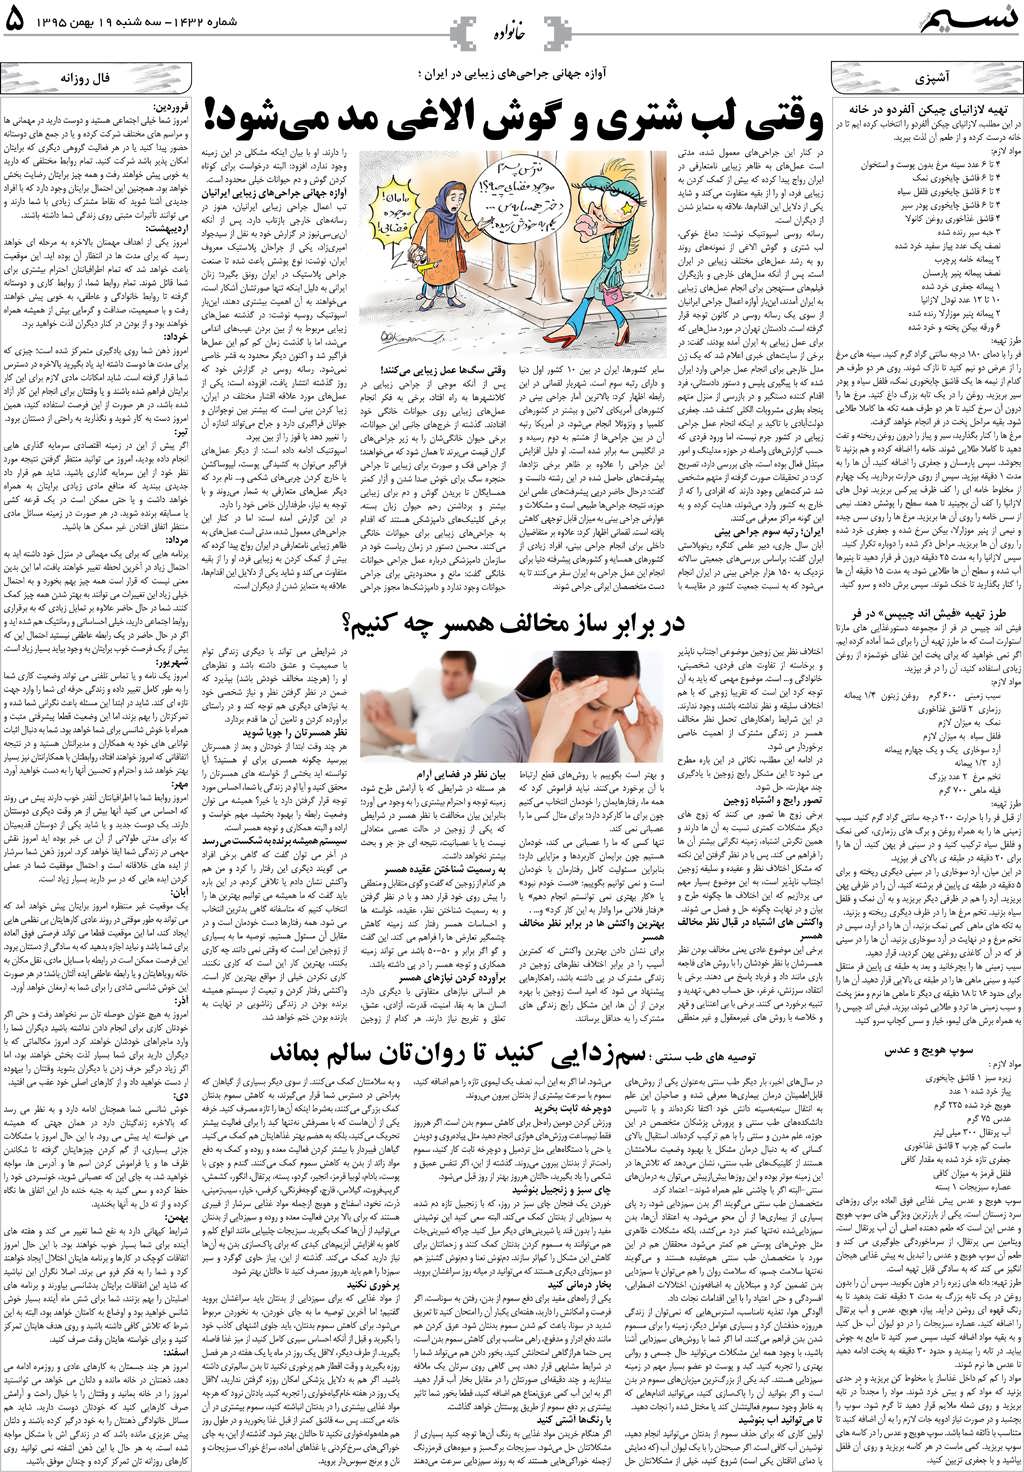 صفحه خانواده روزنامه نسیم شماره 1432